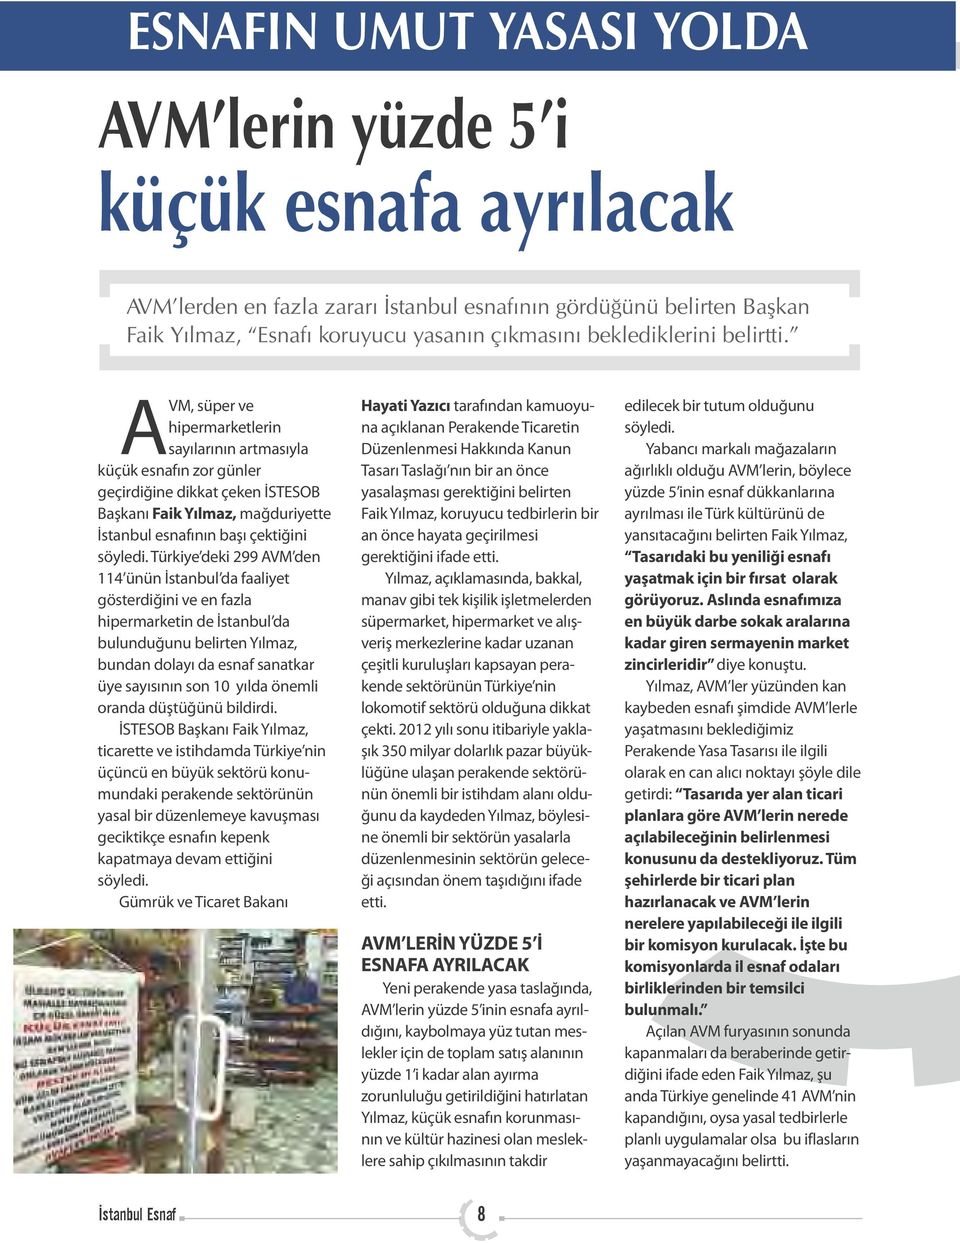 AVM, süper ve hipermarketlerin sayılarının artmasıyla küçük esnafın zor günler geçirdiğine dikkat çeken İSTESOB Başkanı Faik Yılmaz, mağduriyette İstanbul esnafının başı çektiğini söyledi.